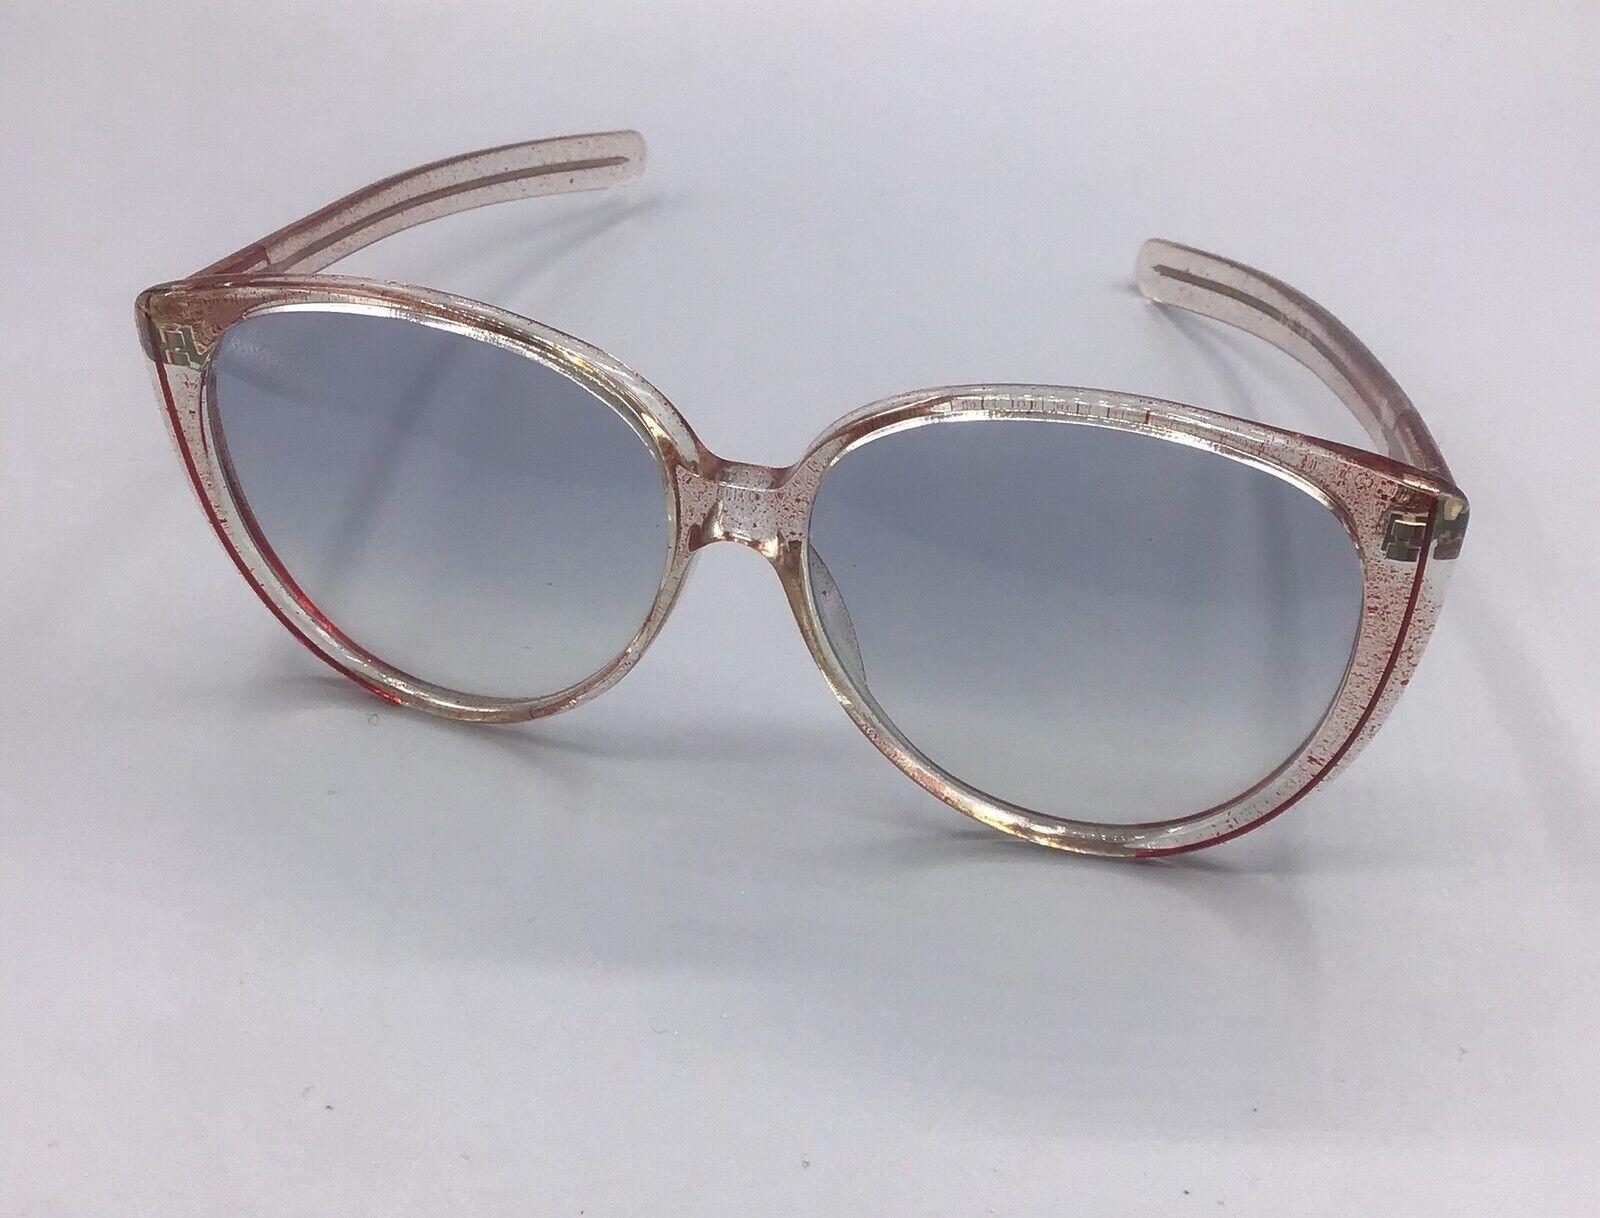 Vogart occhiale da sole acetato Sunglasses sonnenbrillen lunettes vintage